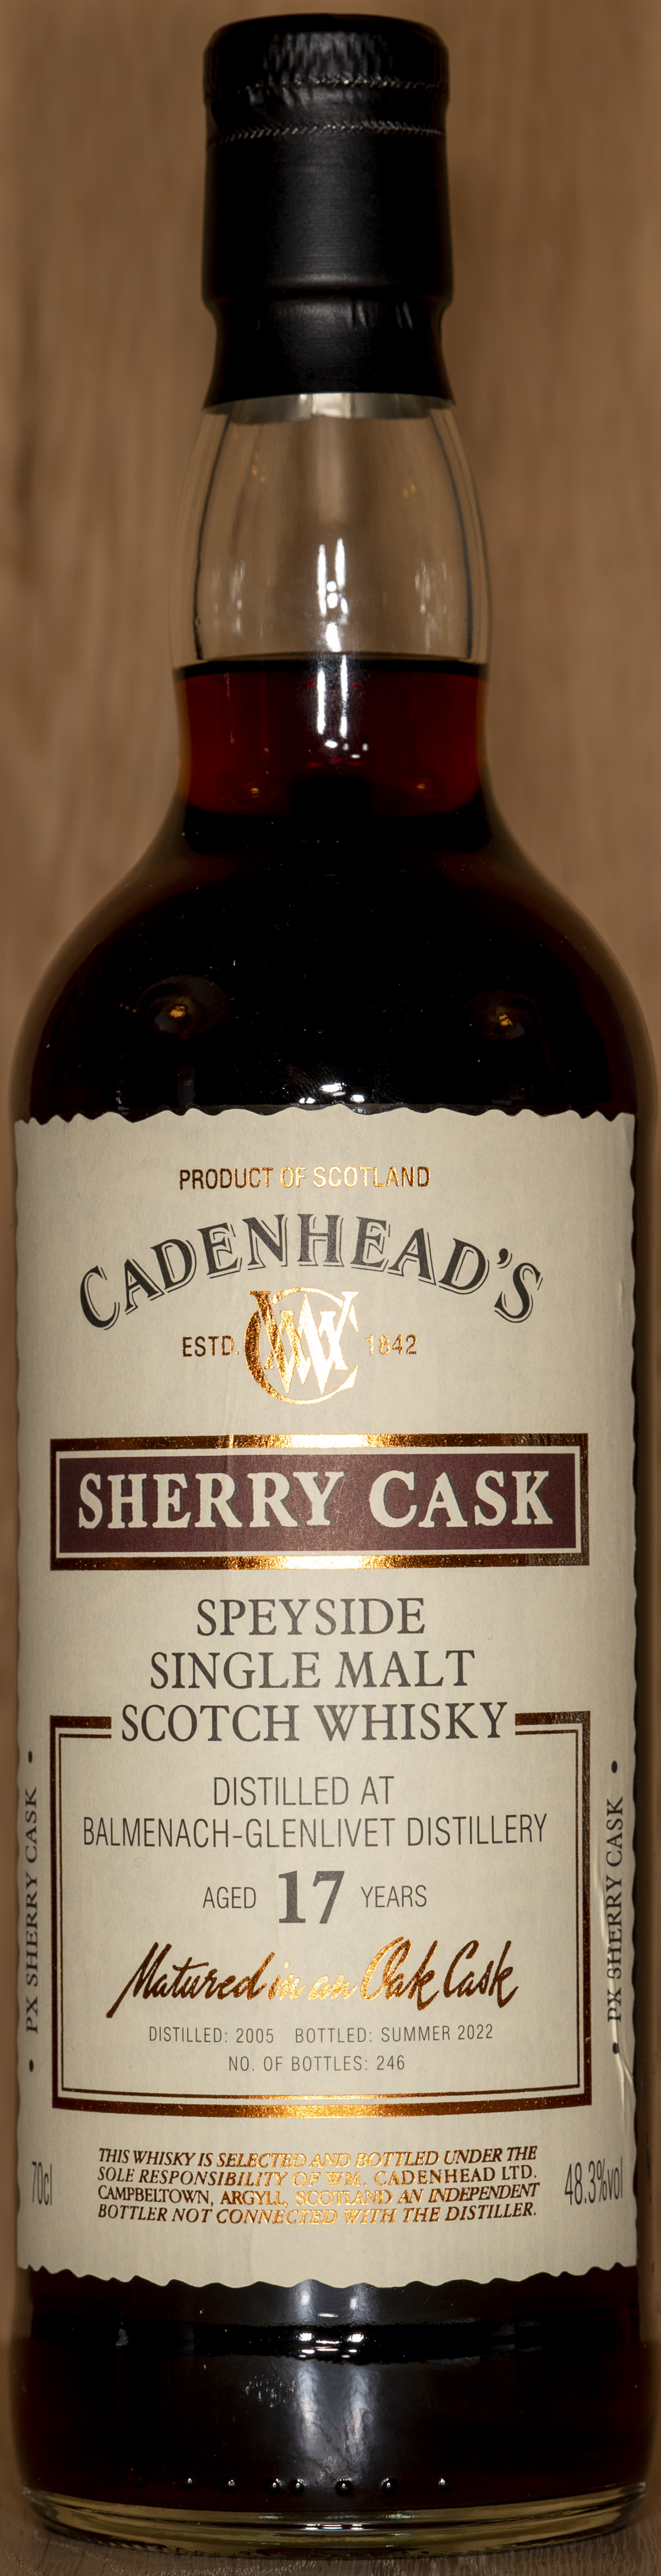 Billede: DSC_5016 - Cadenheads Sherry Cask Balmenach 17 - bottle front.jpg